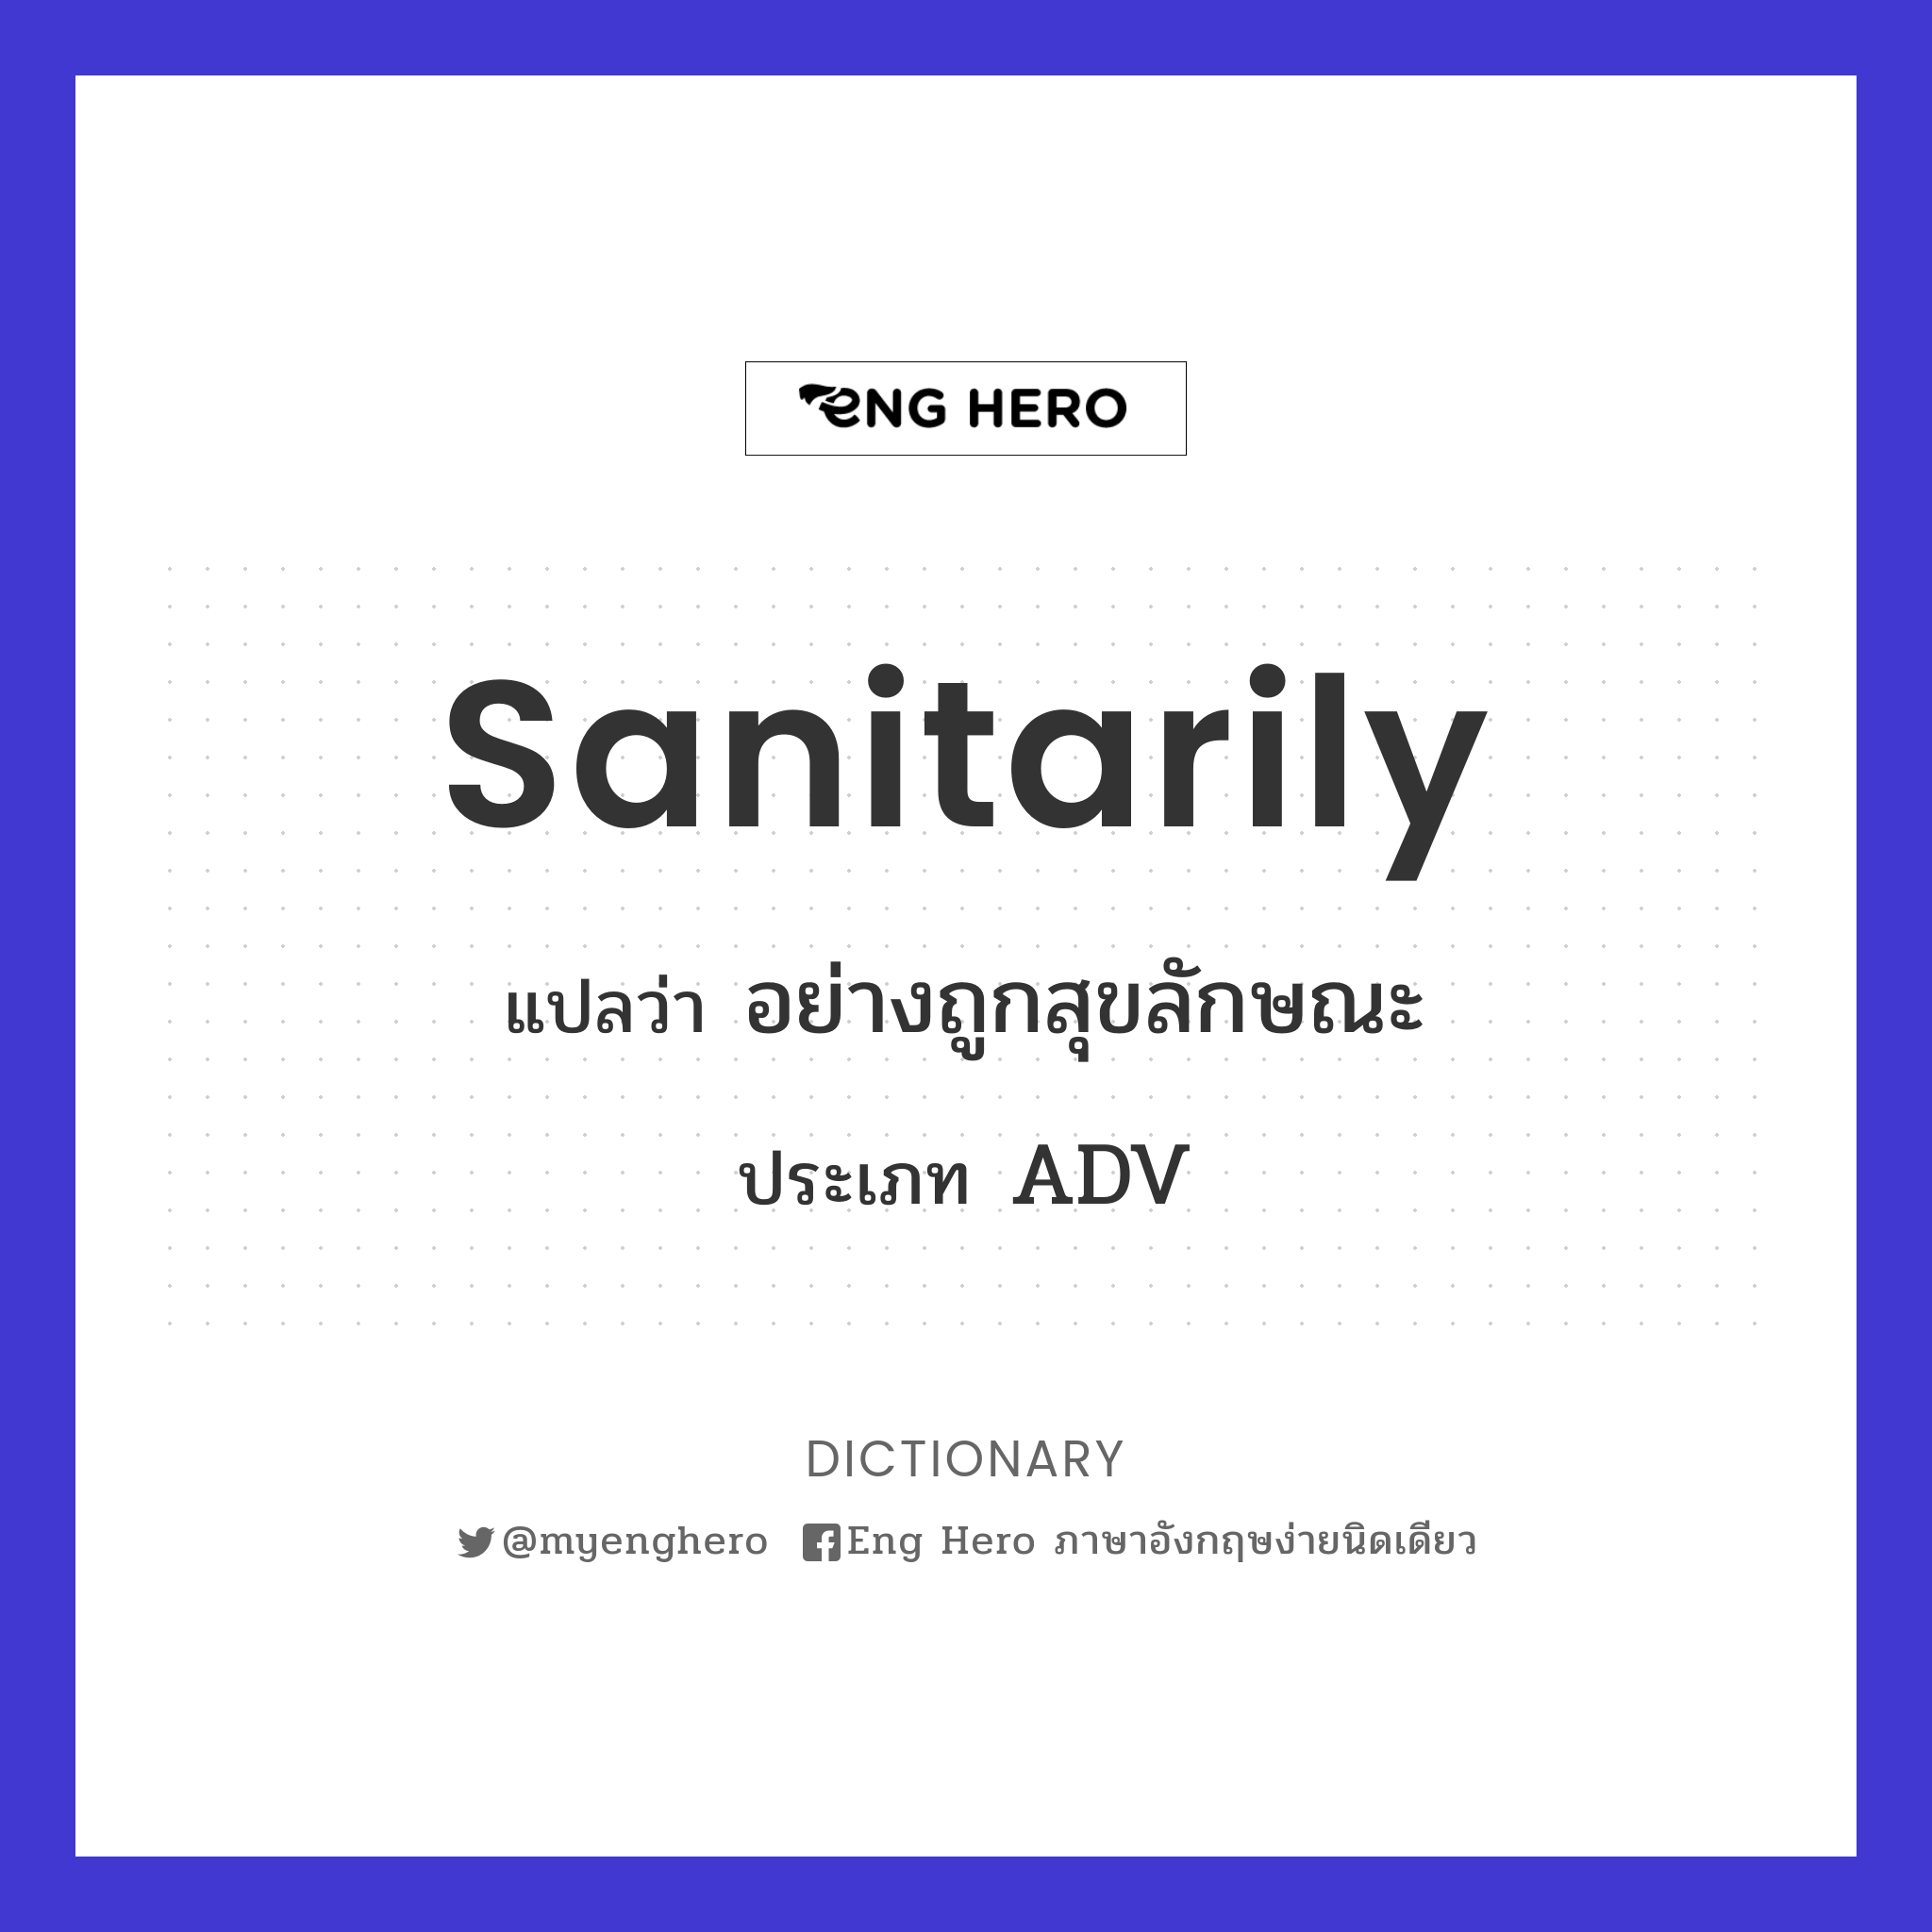 sanitarily